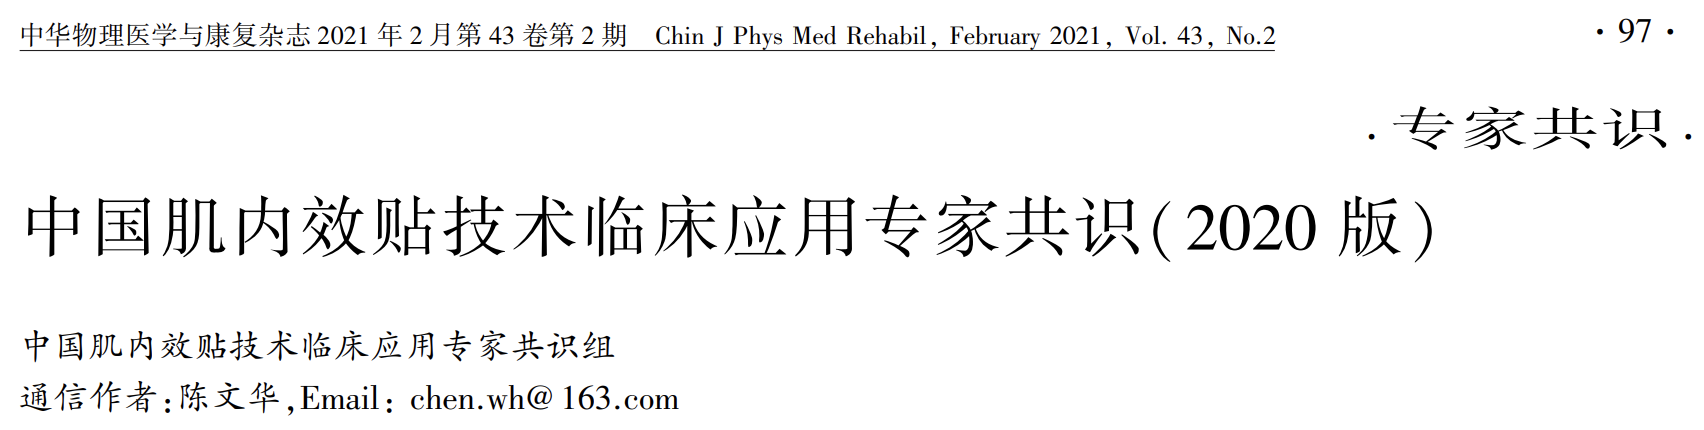 中国<font color="red">肌</font><font color="red">内</font>效贴技术临床应用专家共识（2020），一文get要点！